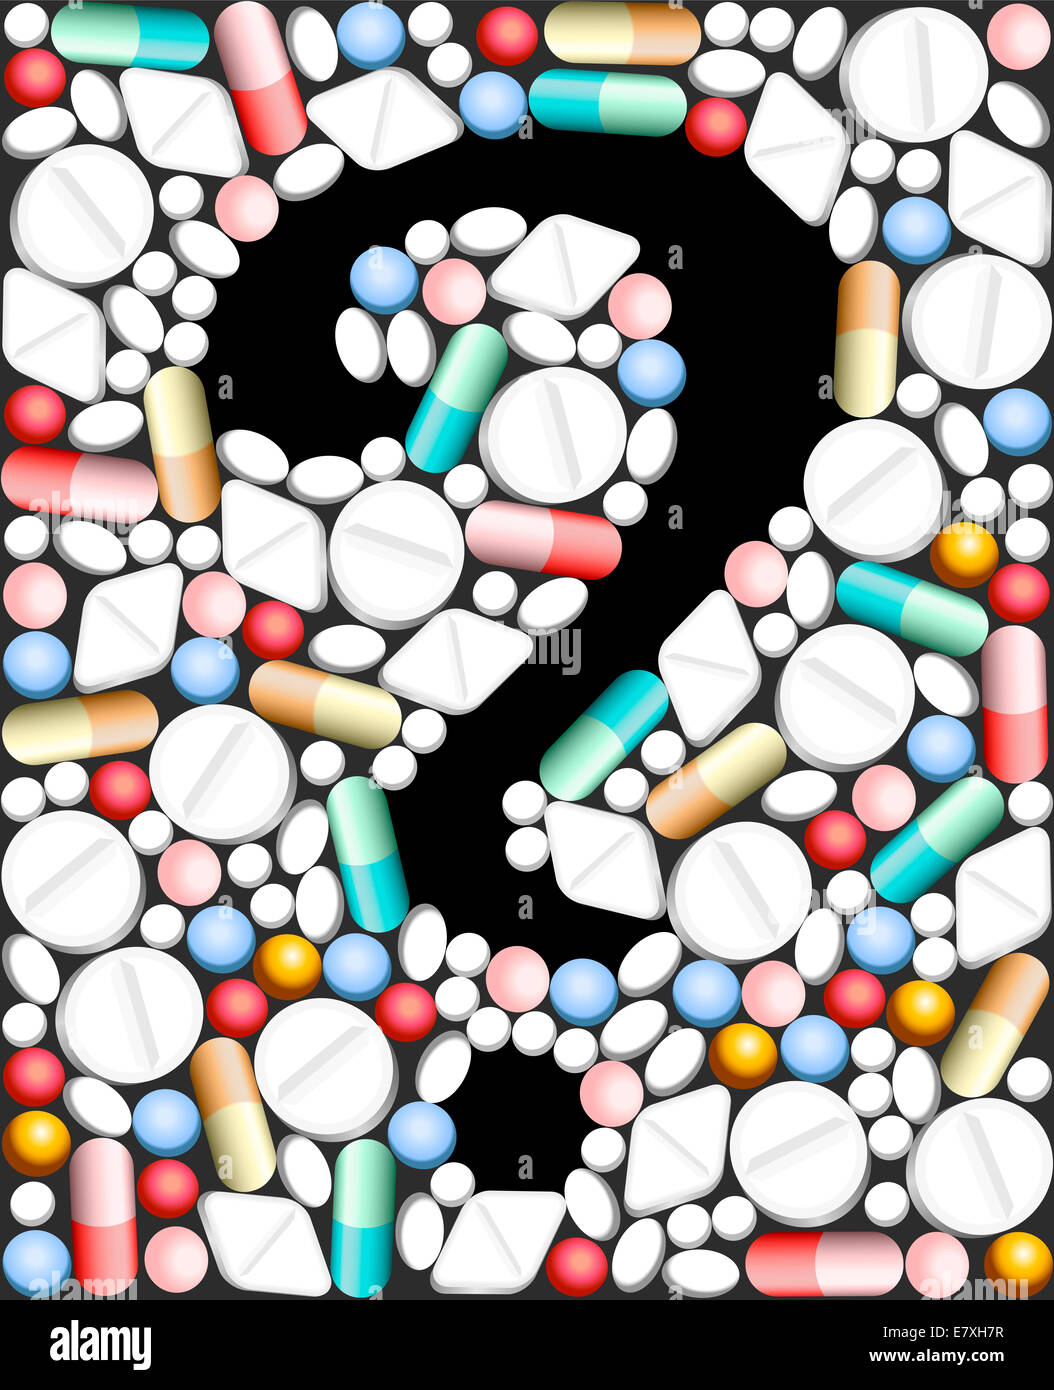 Arzneimittel, die Themen Drogen und bilden ein Fragezeichen als Symbol der über medizinische Probleme. Stockfoto